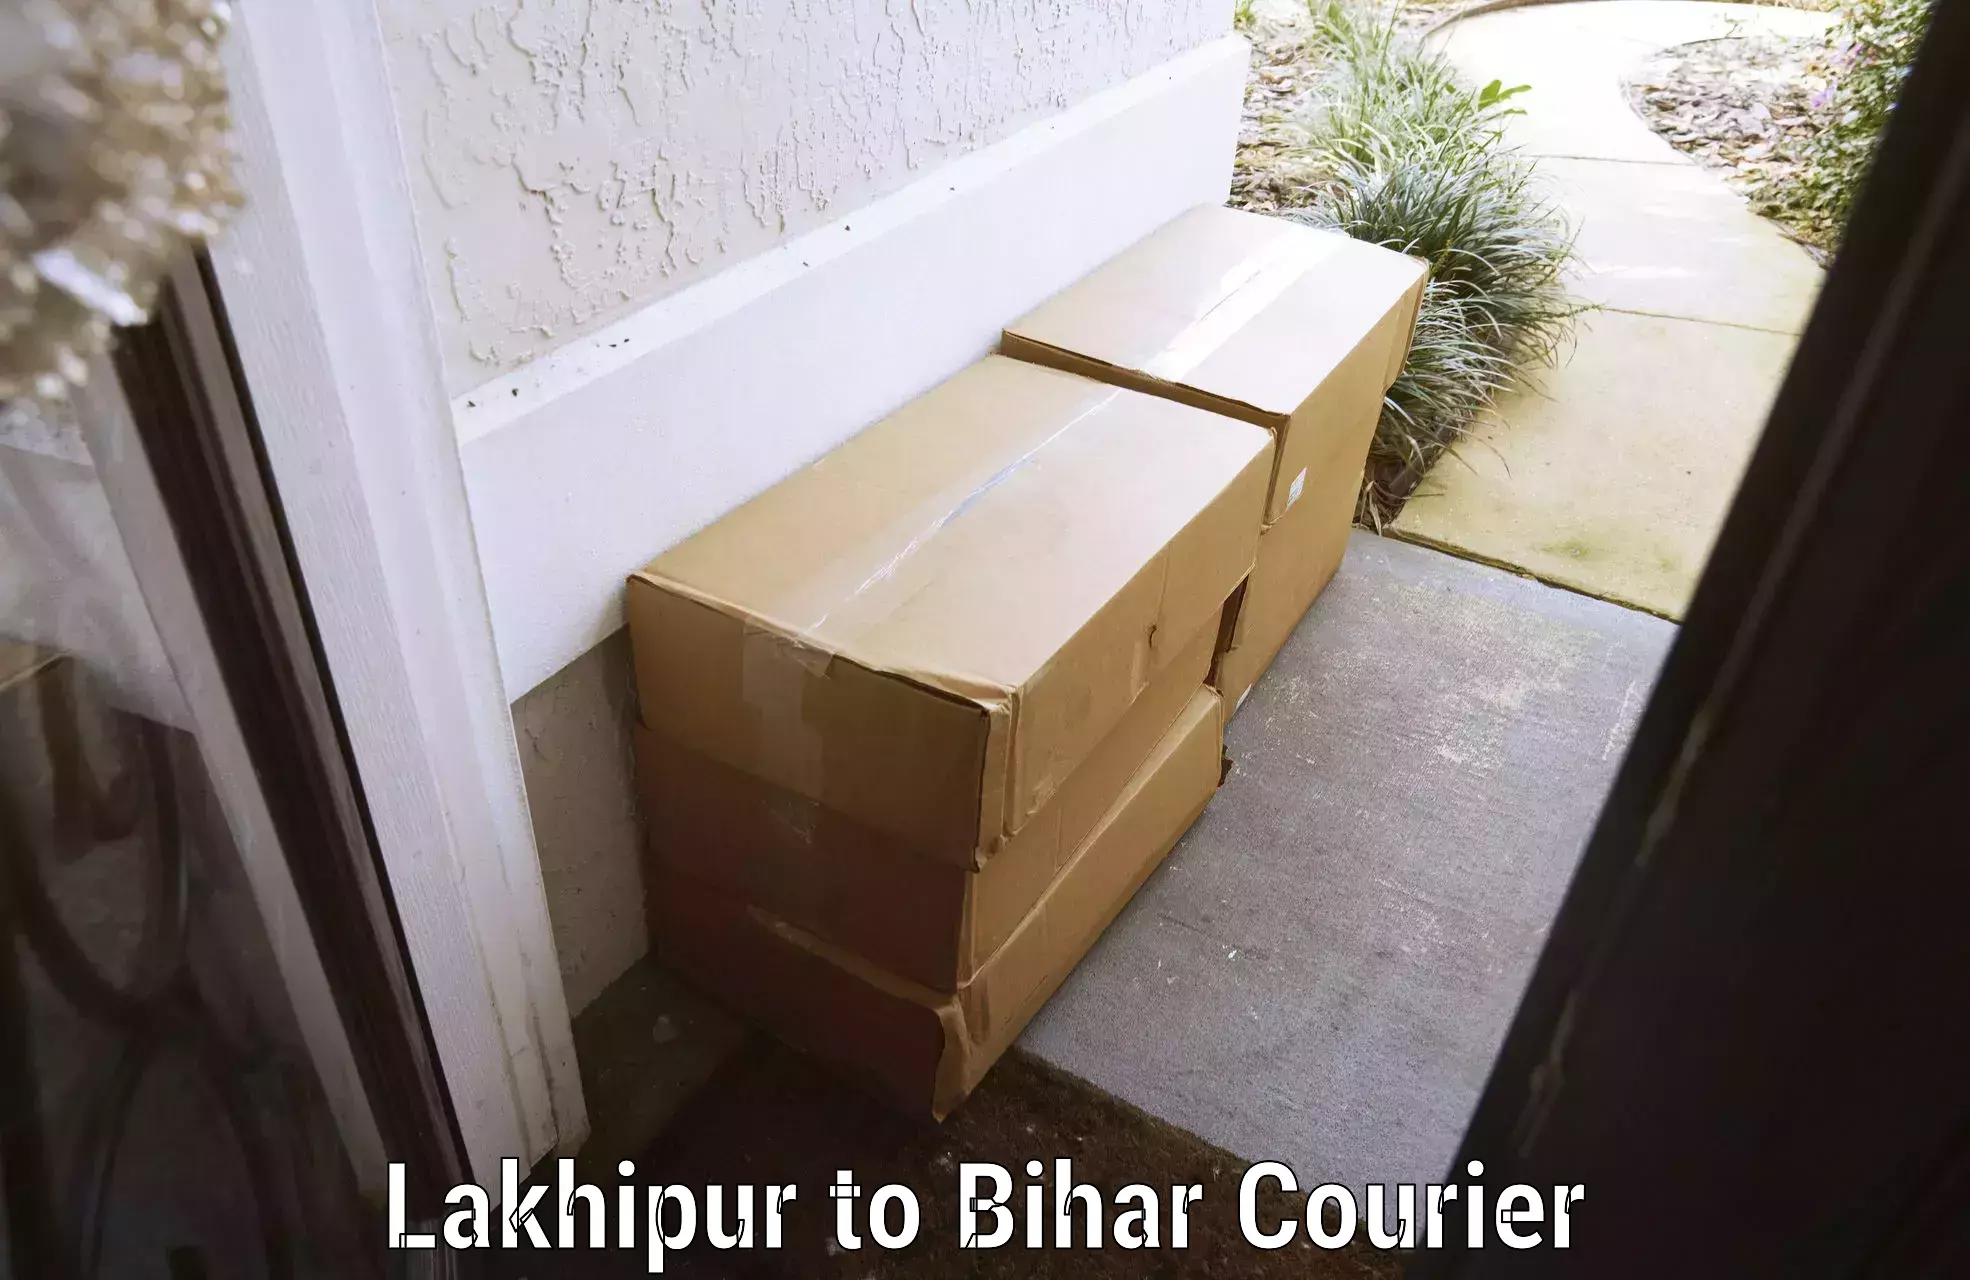 Luggage shipment tracking Lakhipur to Dumraon